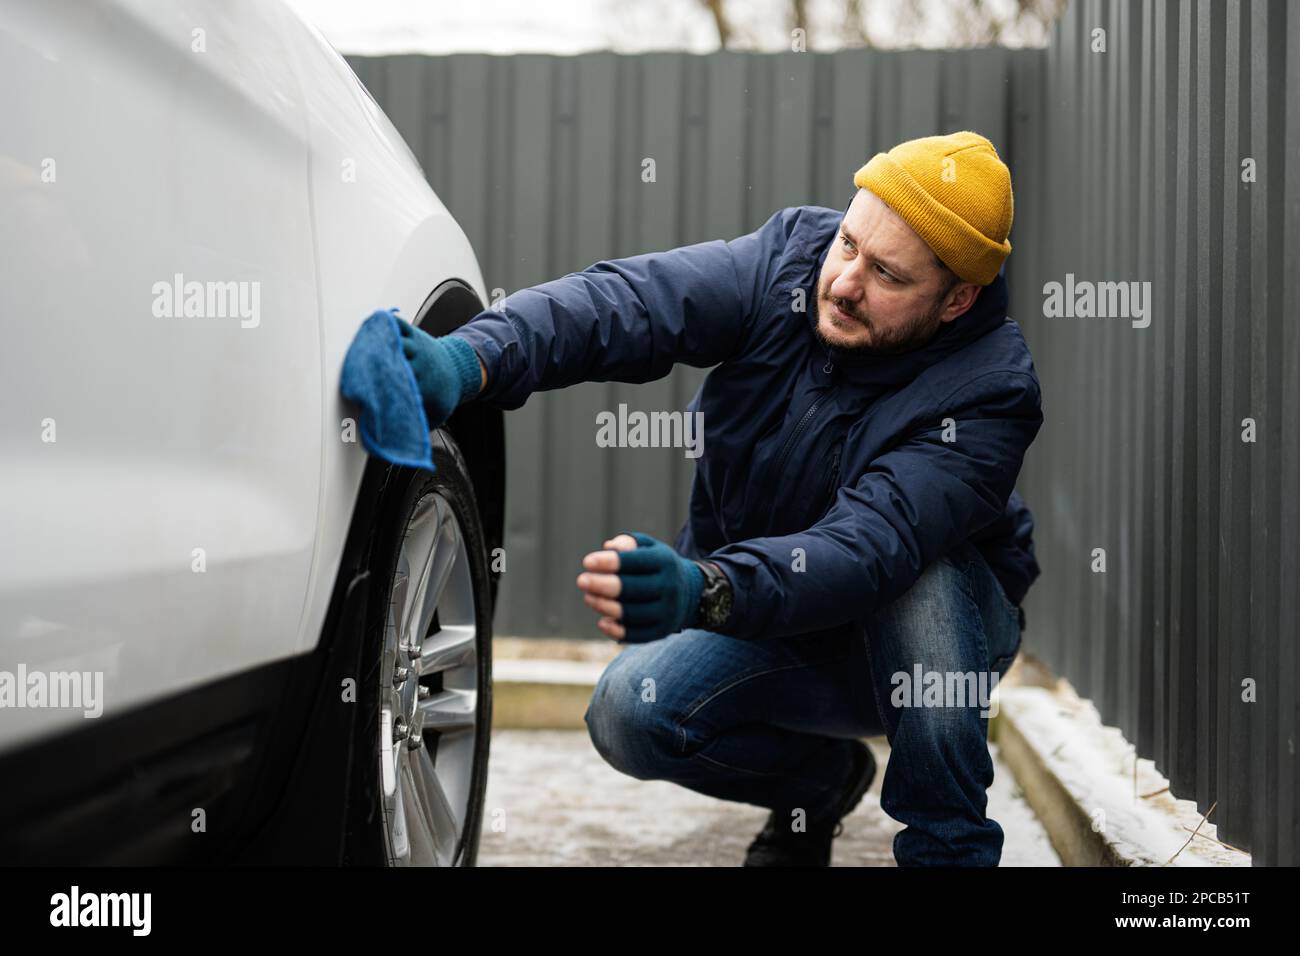 Der mann wischt die amerikanische suv-autohaube nach dem waschen